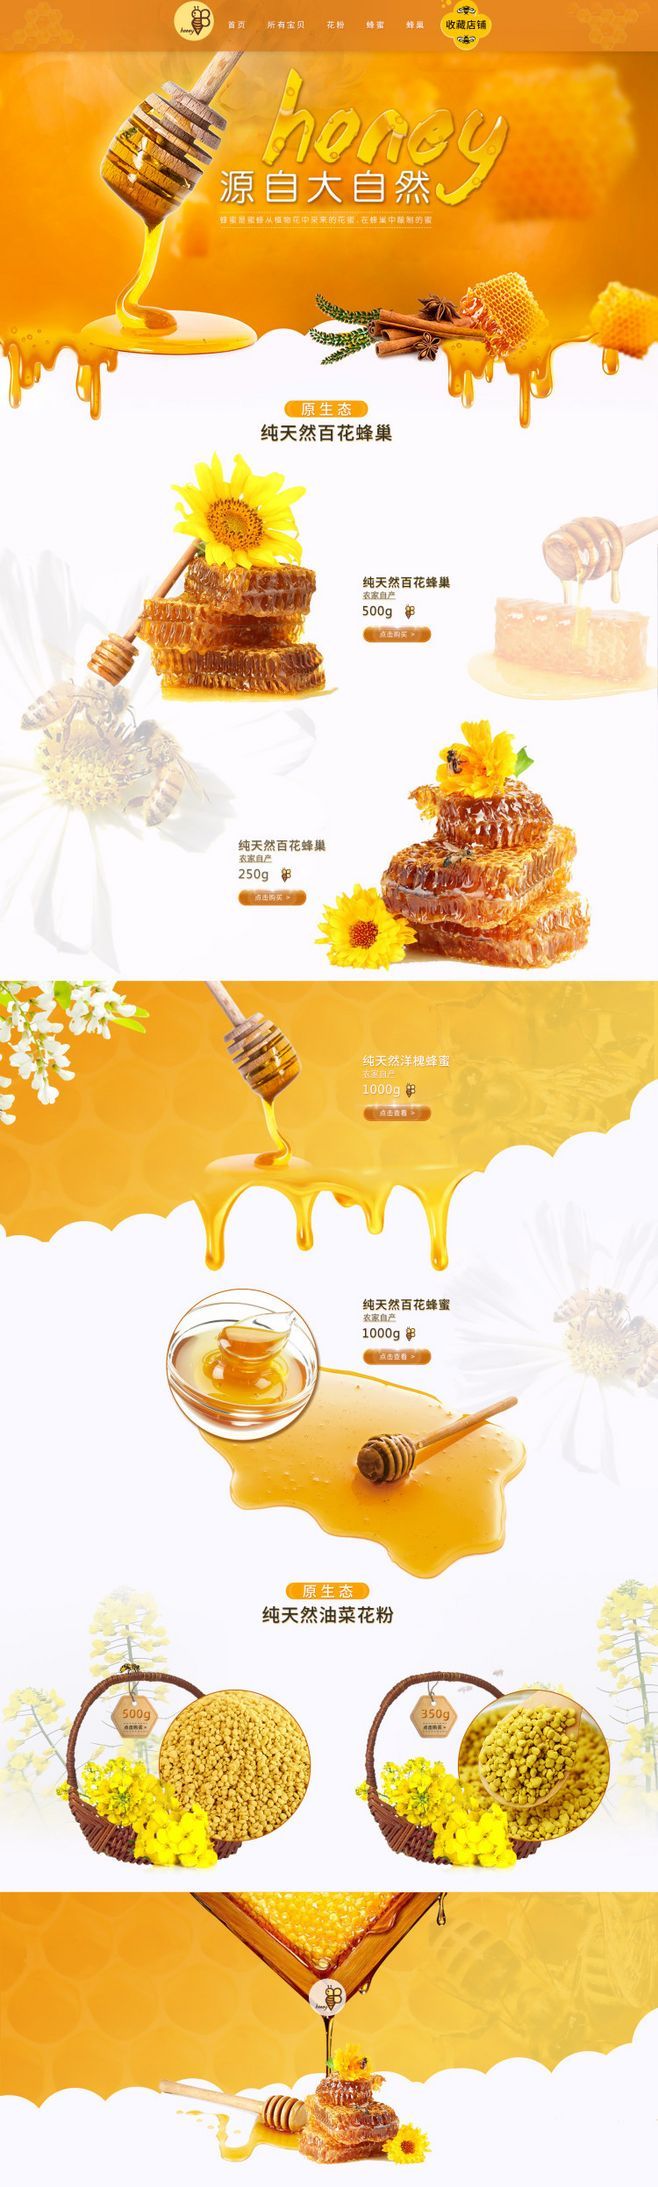 淘宝美工九里蜂蜜  营养品 糖 农产品 自然 清新作品